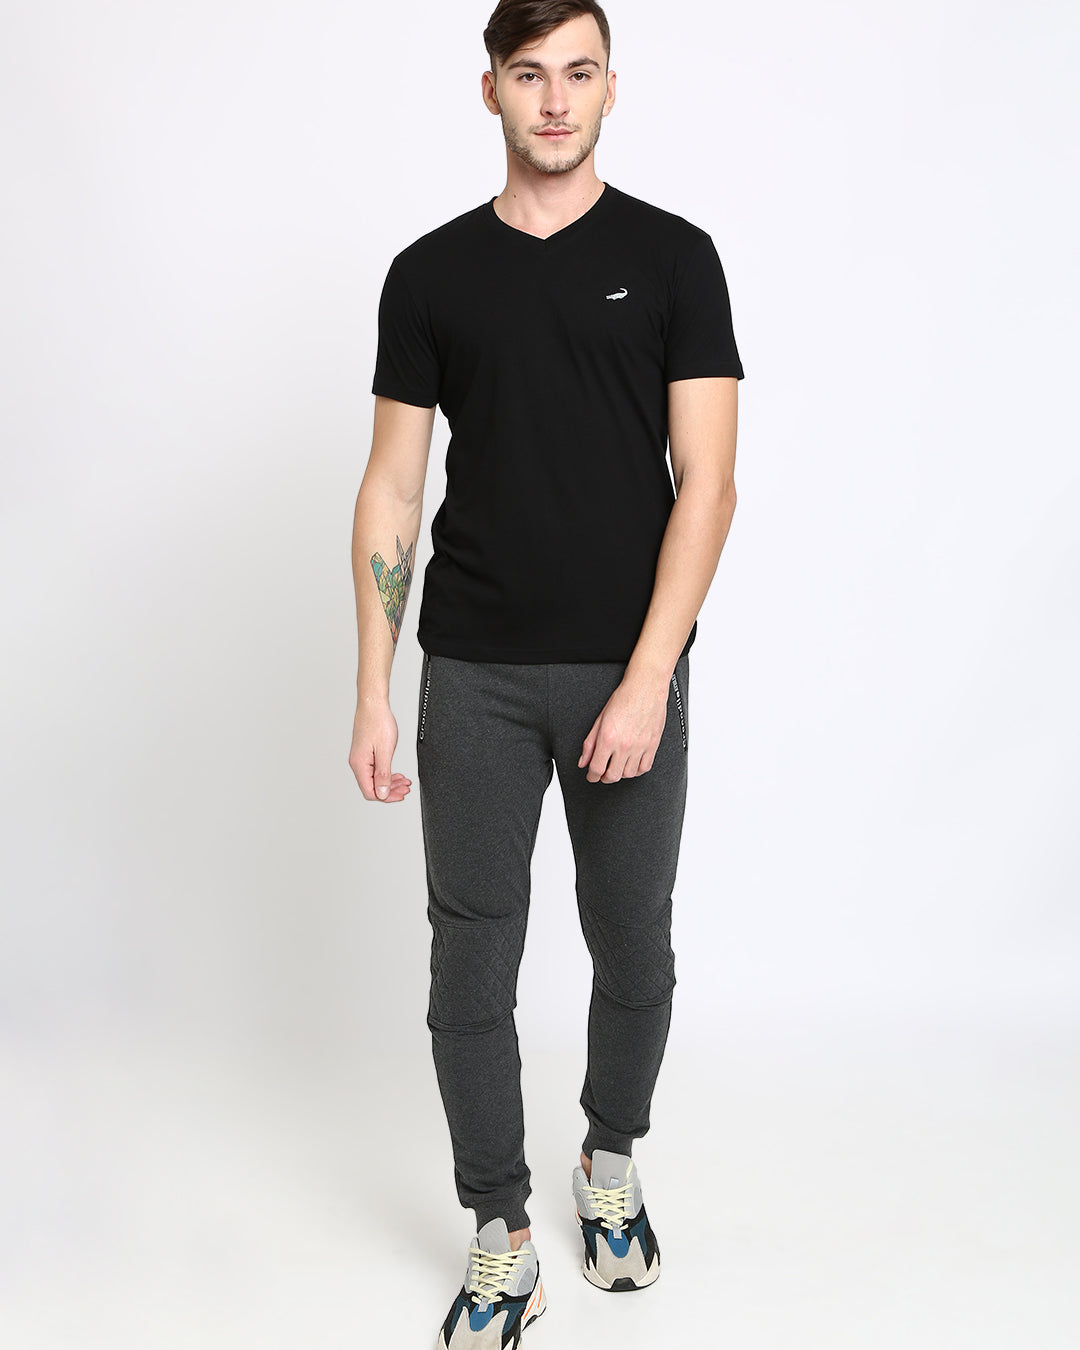 Men's Solid V Neck Half Sleeve Cotton T-Shirt - BLACK